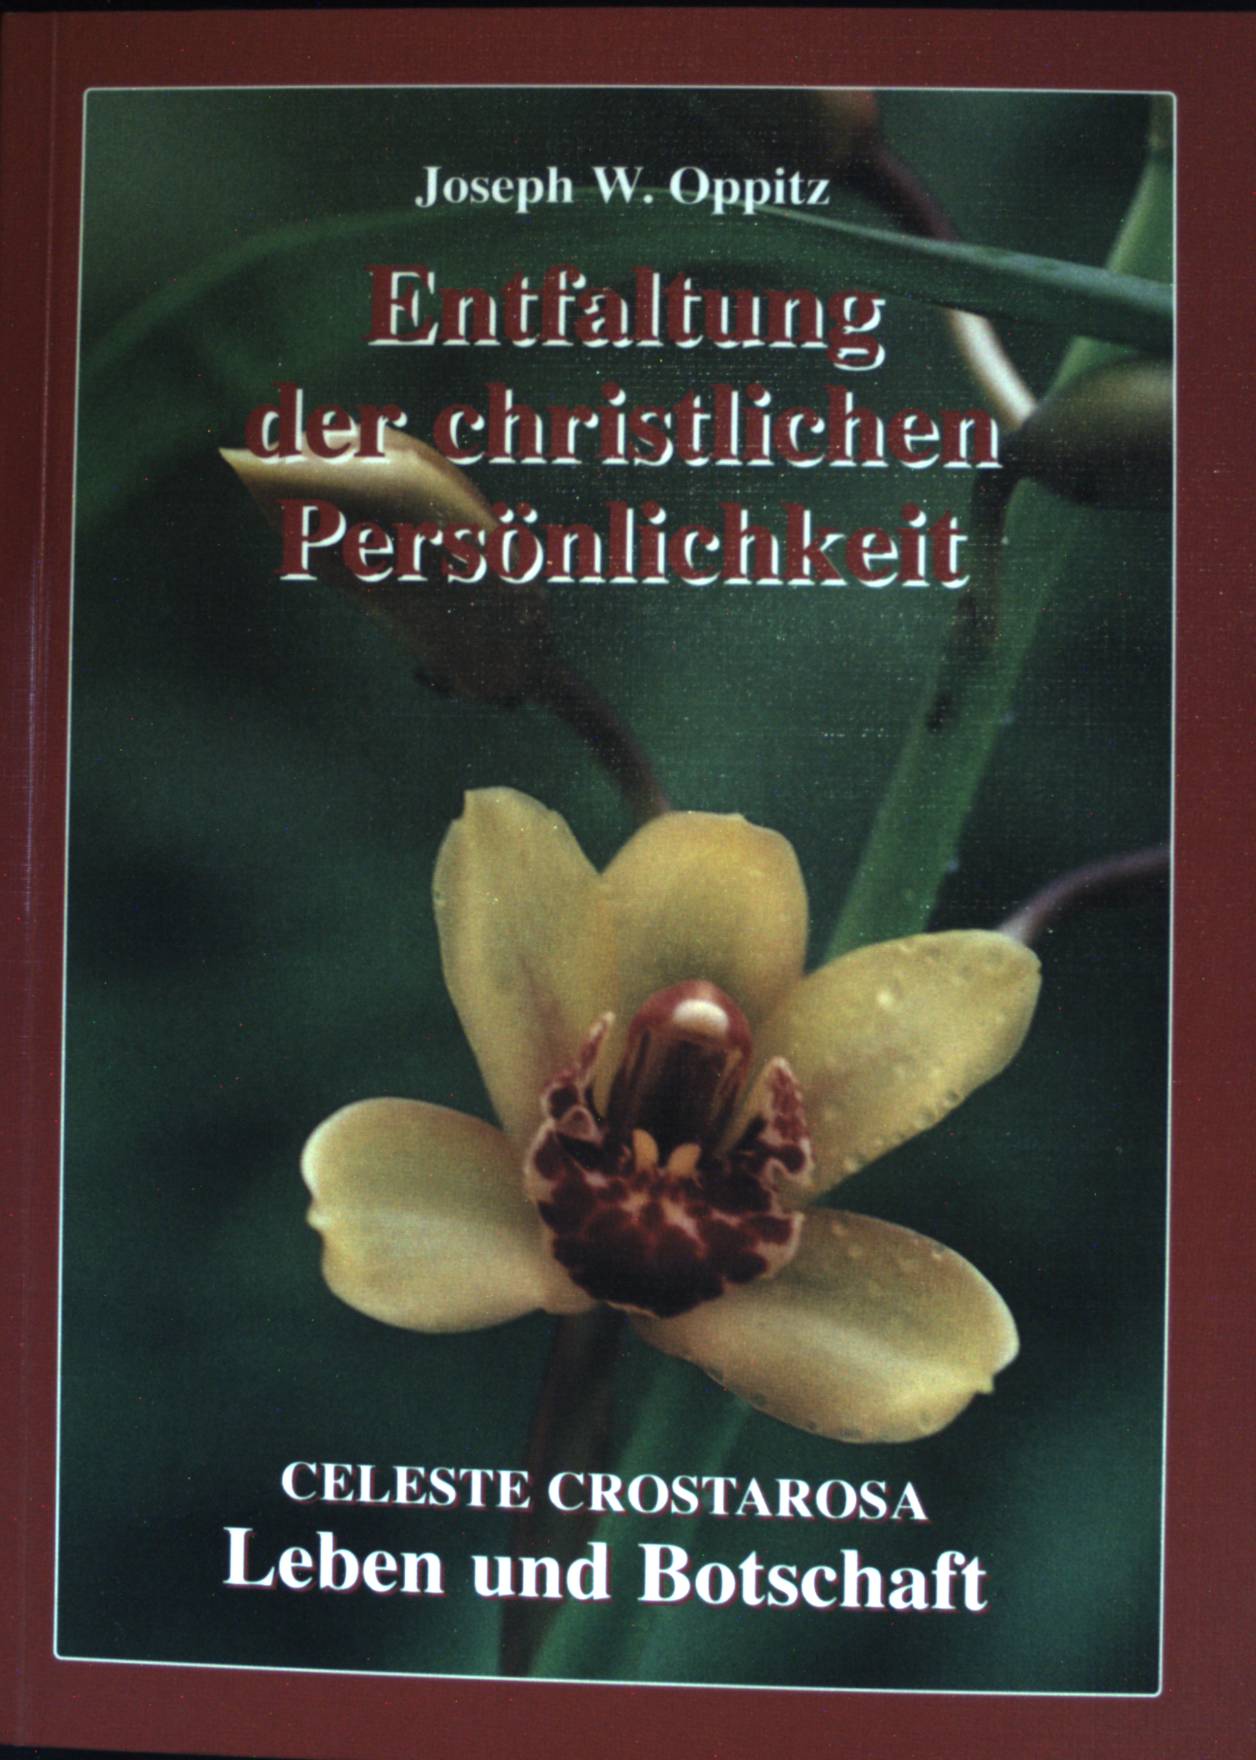 Entfaltung der christlichen Persönlichkeit; Celeste Crostarosa; Leben und Botschaft. - Oppitz, Joseph W.